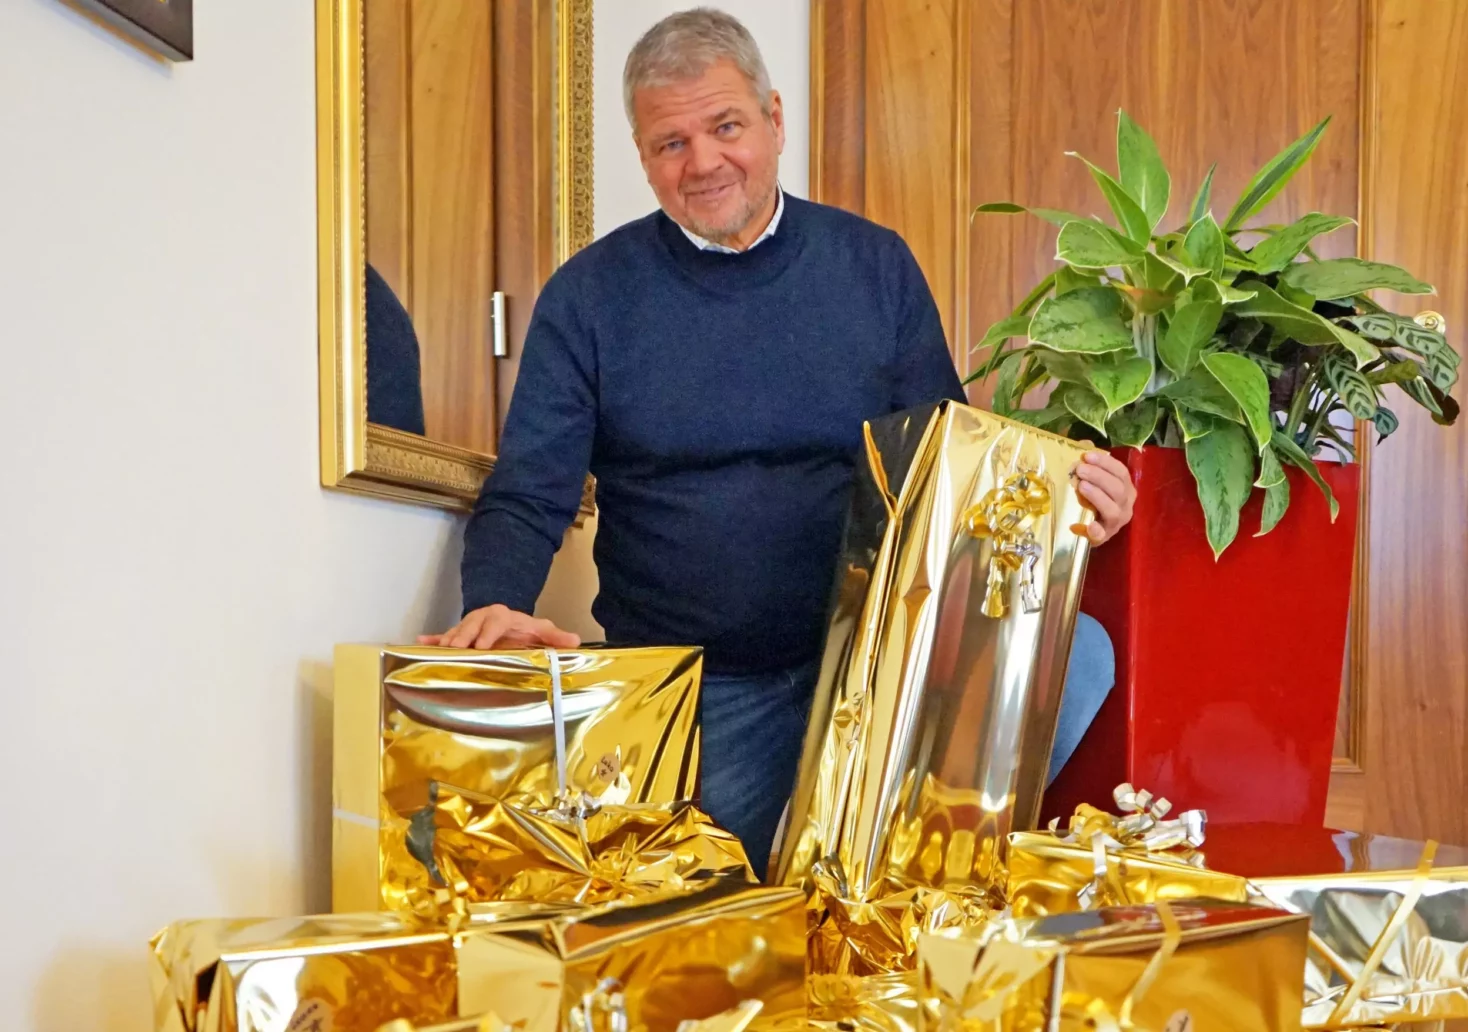 Ein Bild auf 5min.at zeigt den Spittaler Bürgermeister Gerhard Köfer vor einem Stapel goldener Geschenke.